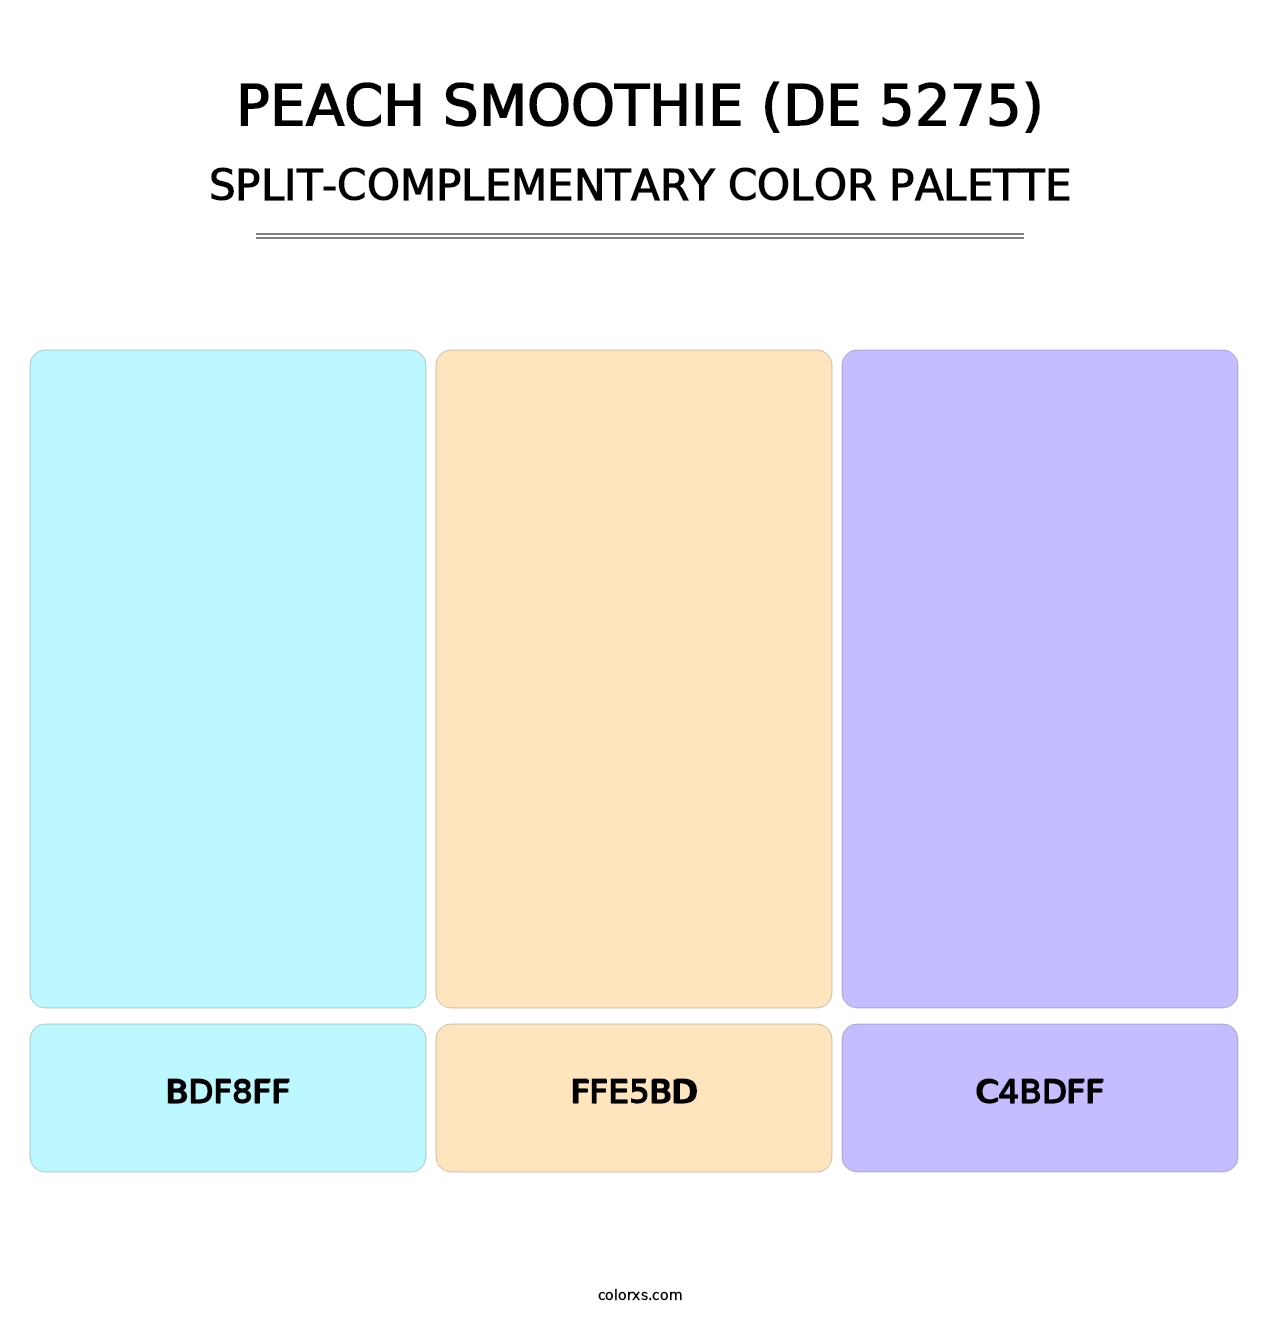 Peach Smoothie (DE 5275) - Split-Complementary Color Palette